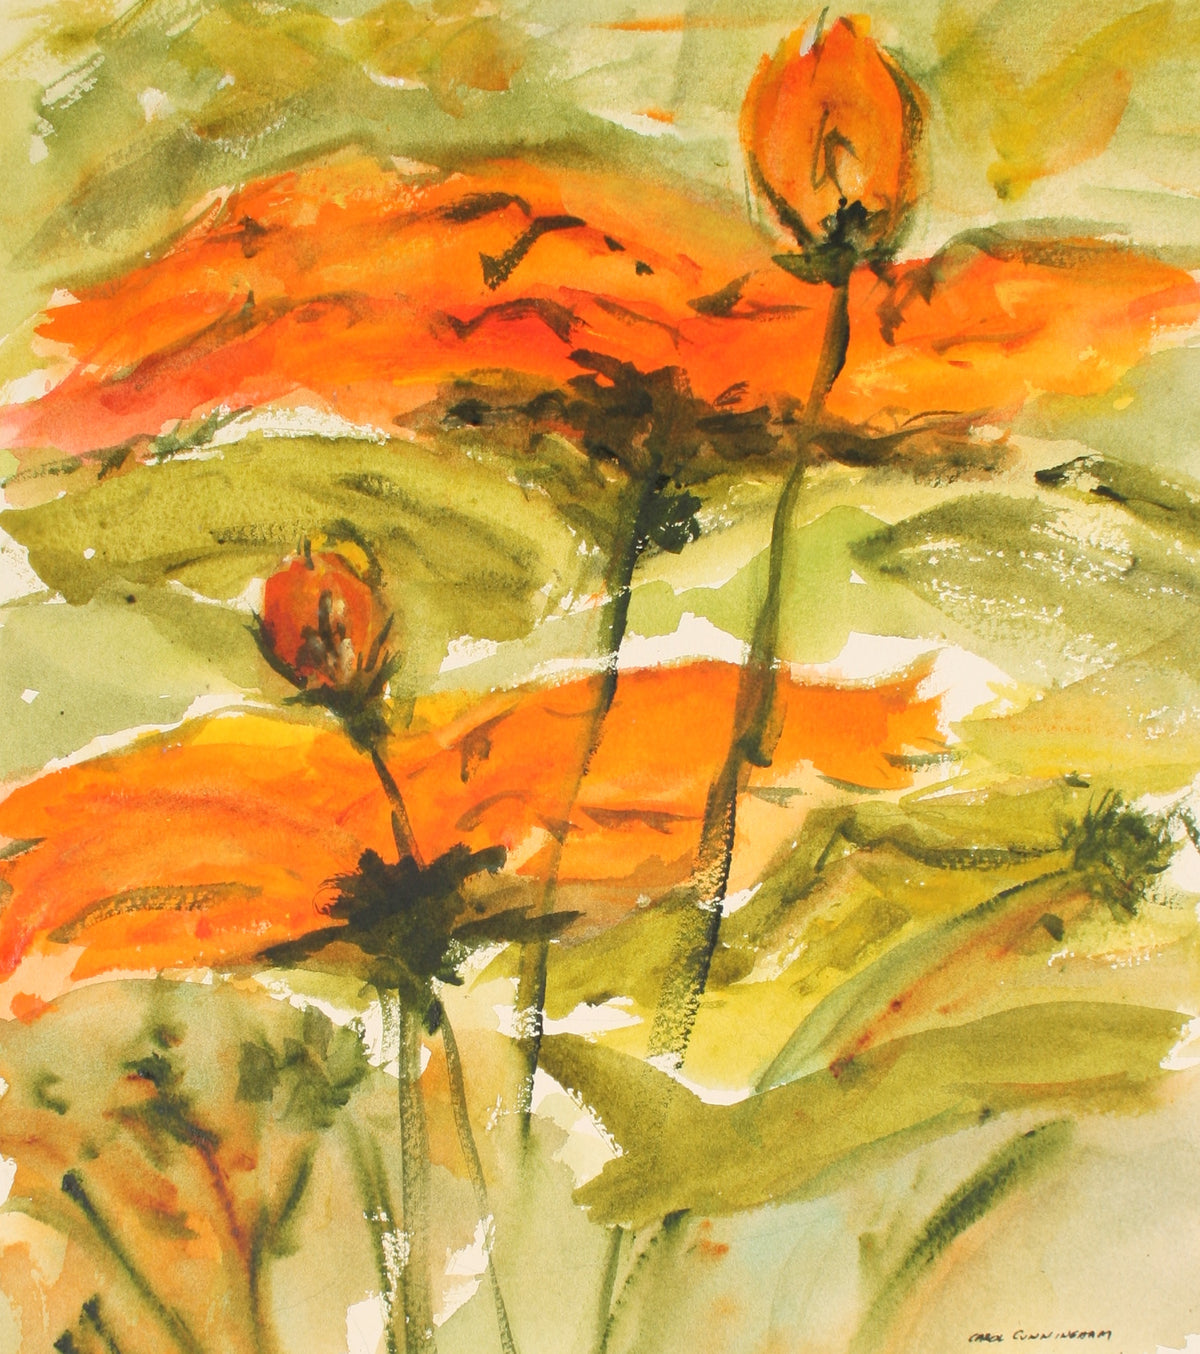 Fiery Flowers&lt;br&gt;1960-70s Watercolor&lt;br&gt;&lt;br&gt;#71342